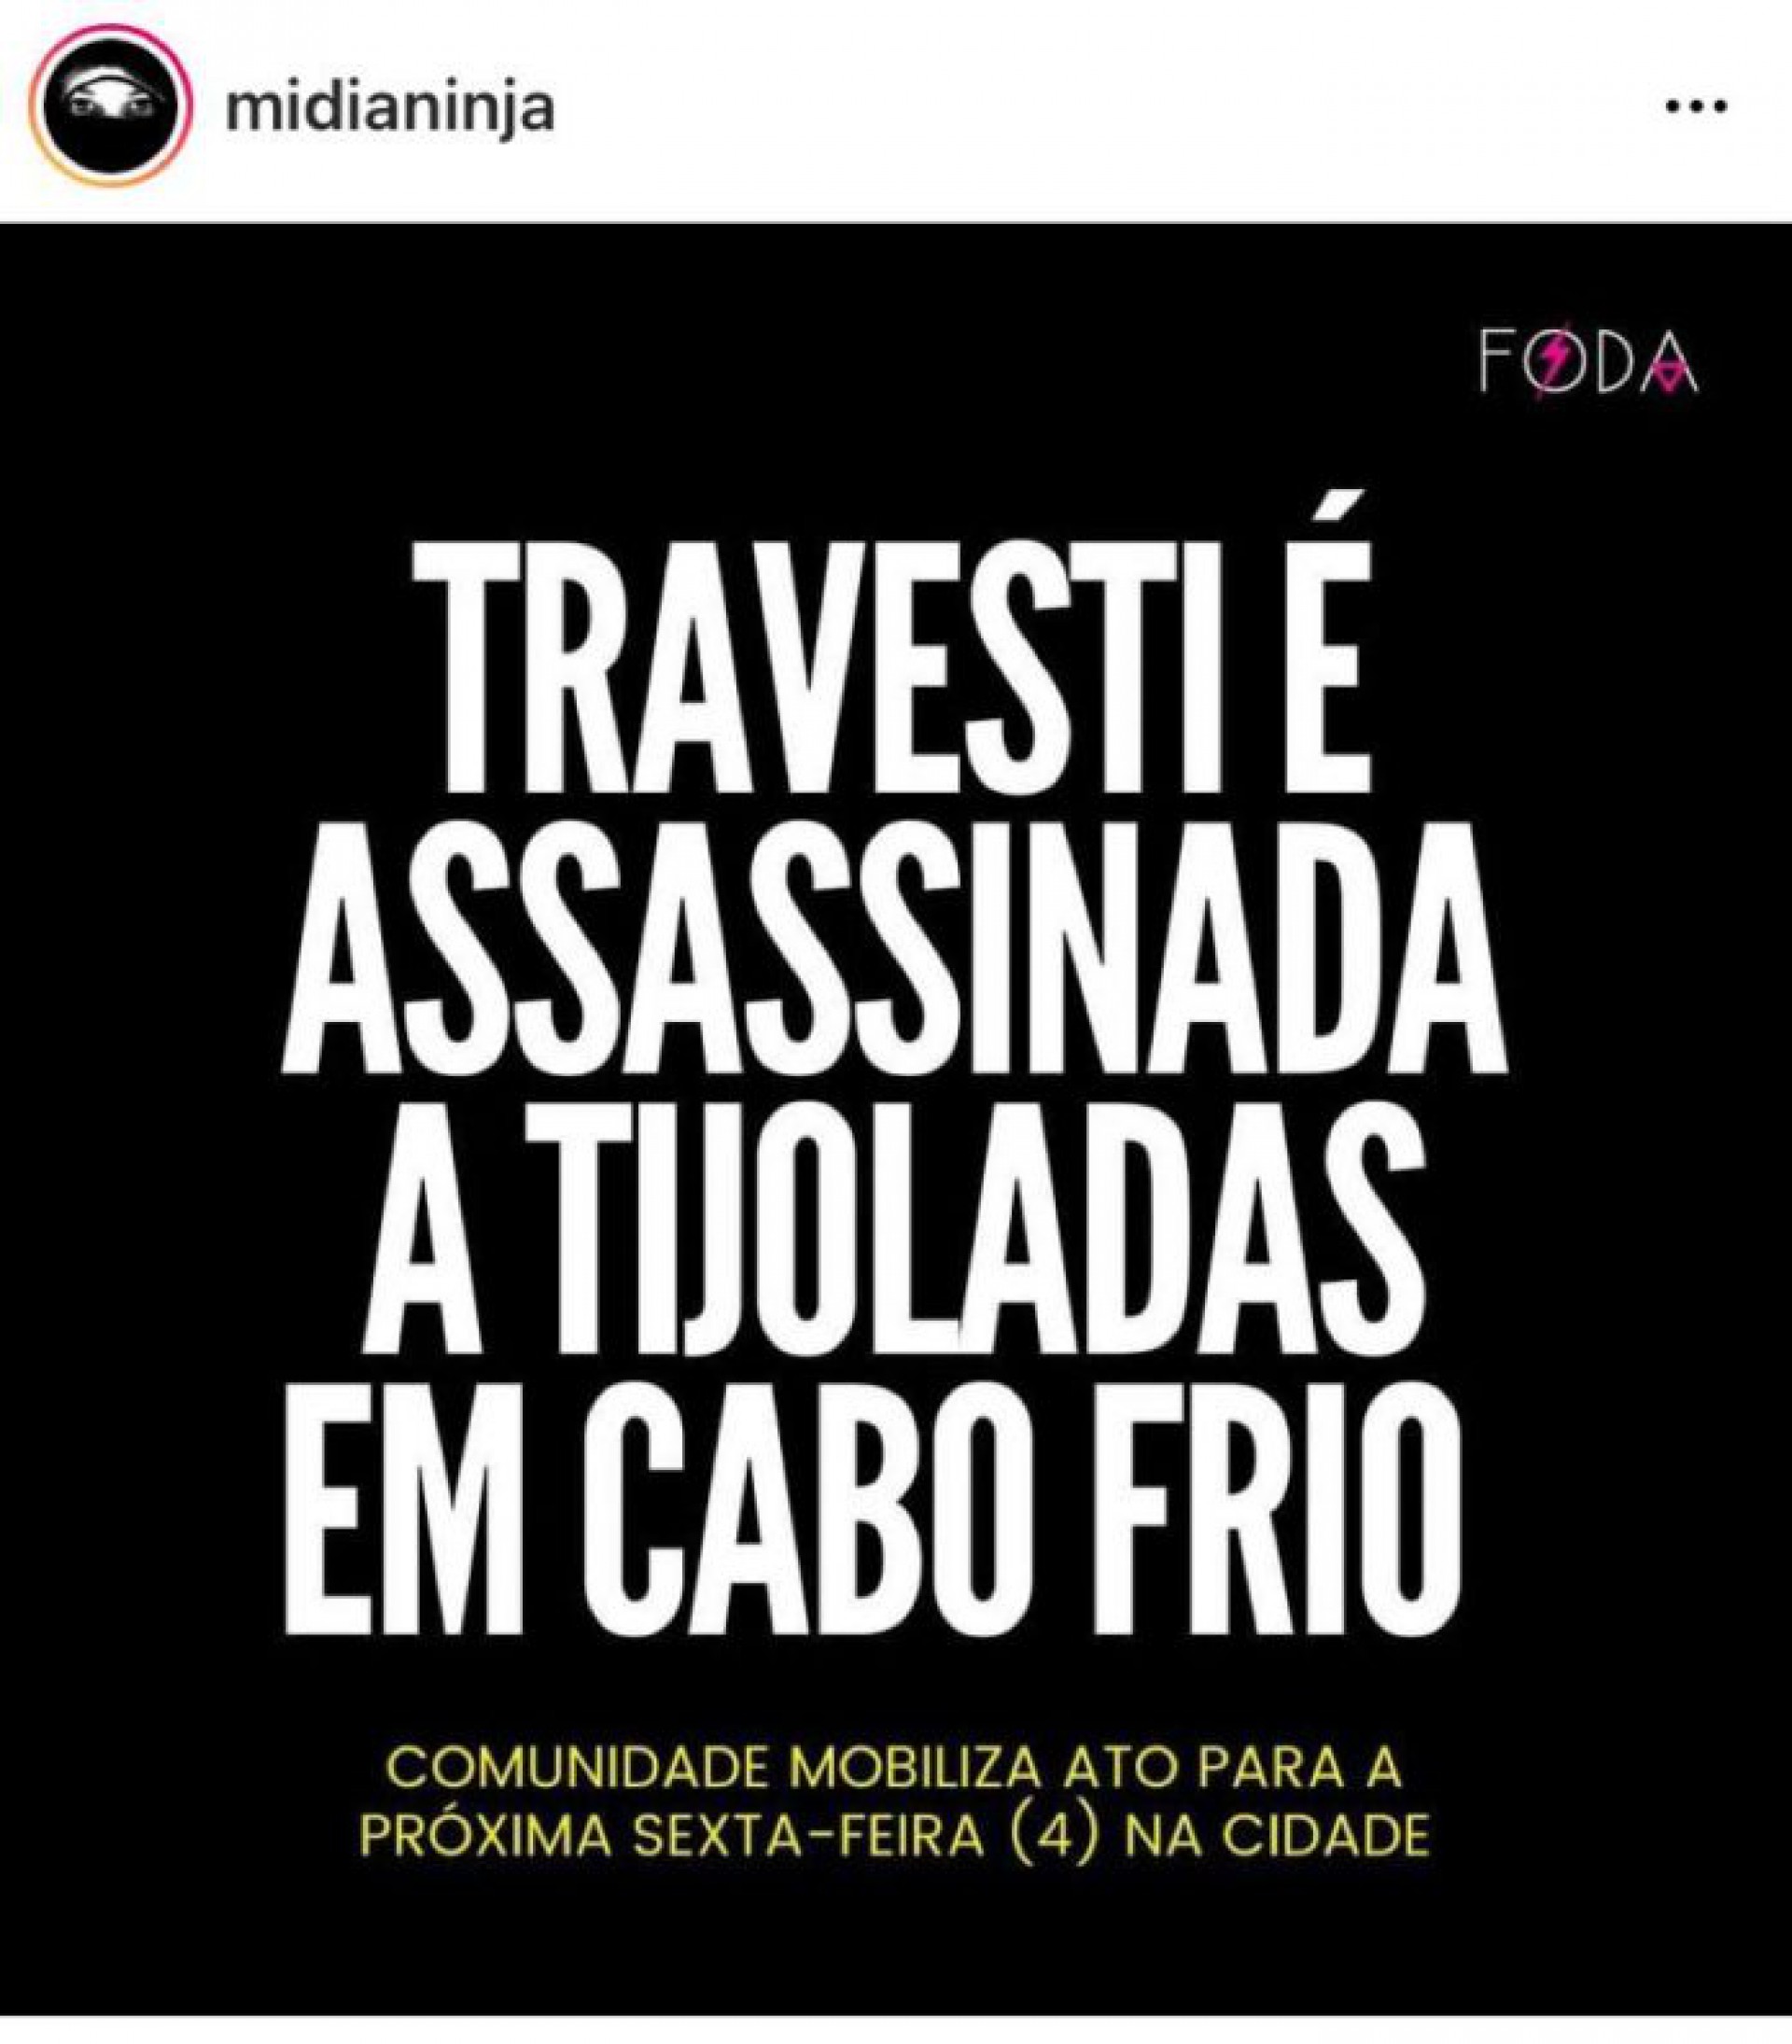 Post feito no Instagram pelo Portal Mídia Ninja - Redes sociais